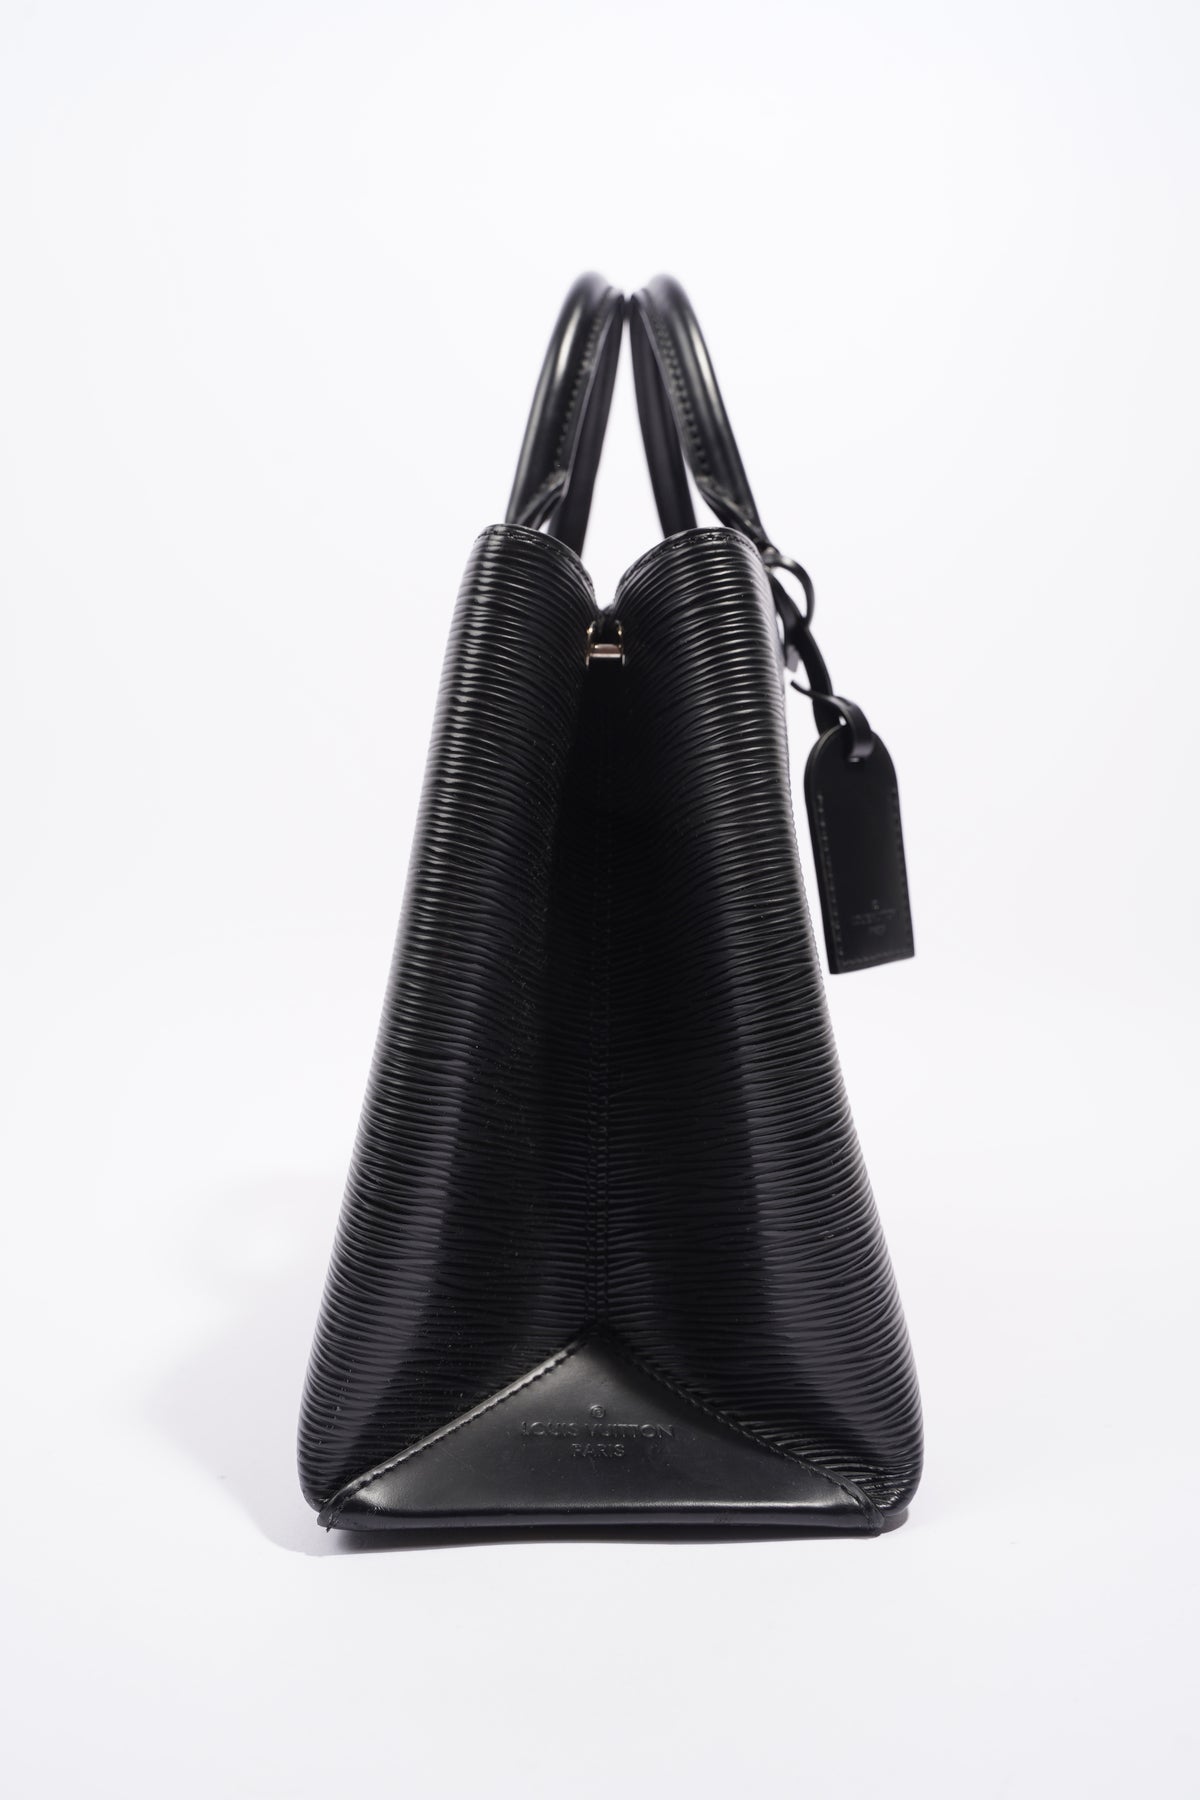 Louis Vuitton Black Epi Leather Kleber MM Bag Louis Vuitton